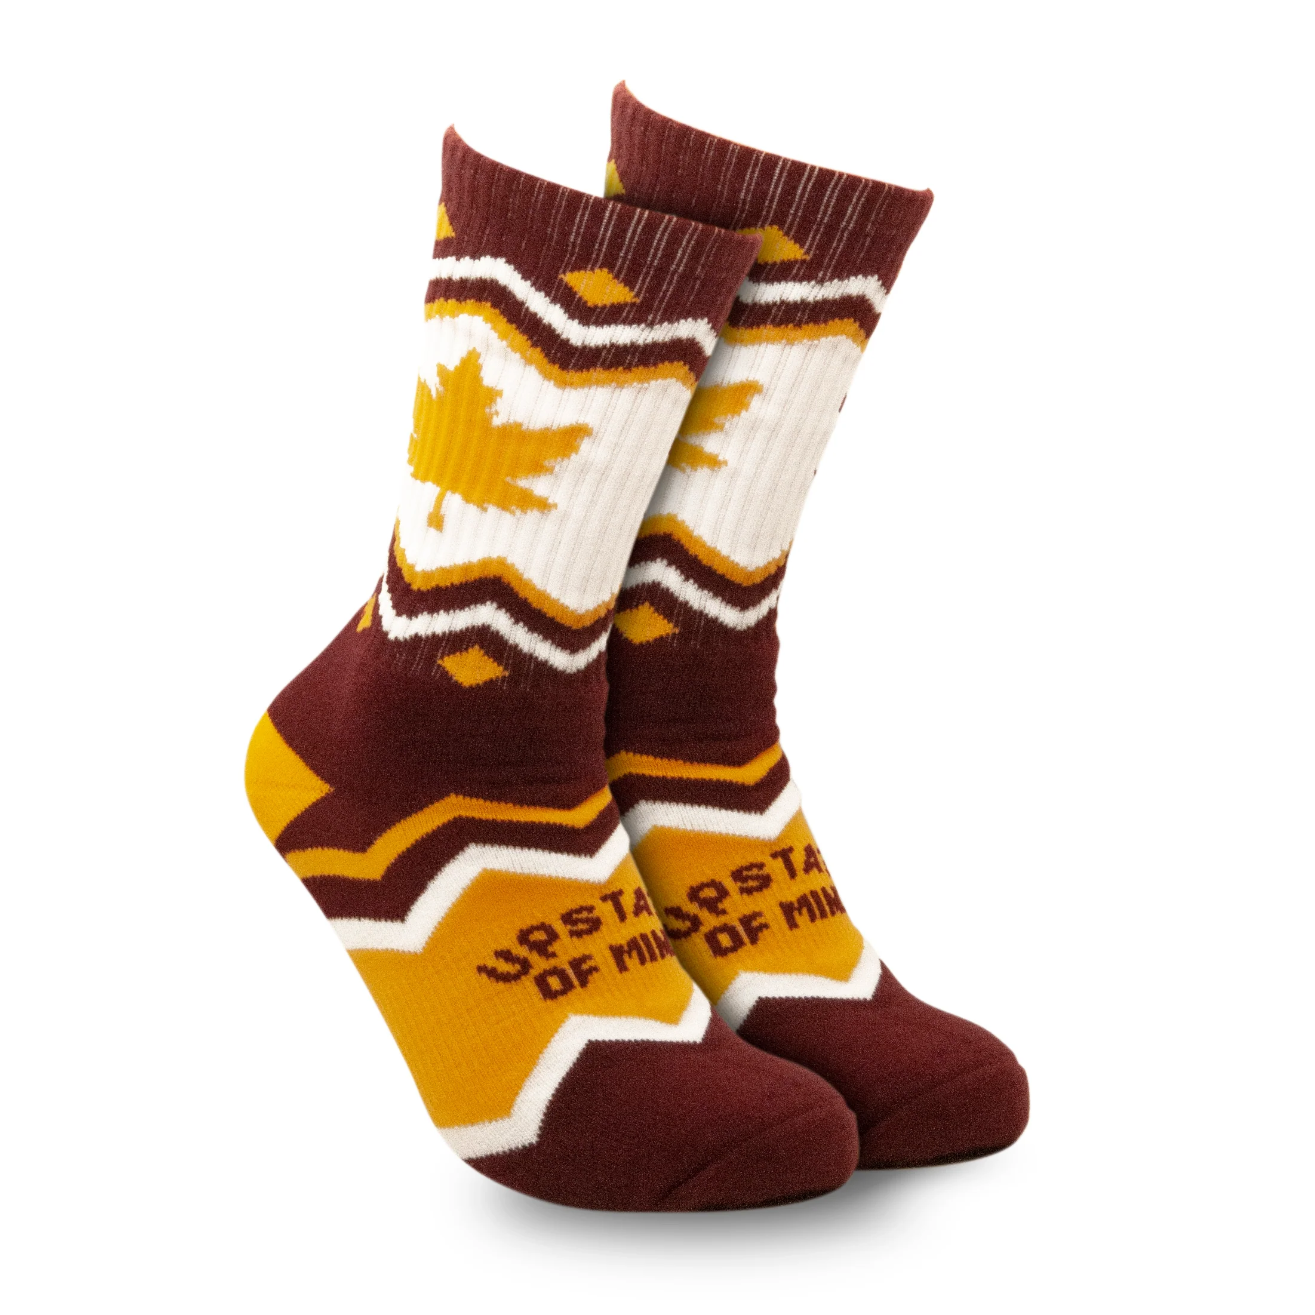 Maple Leaf Socks by Upstate of Mind